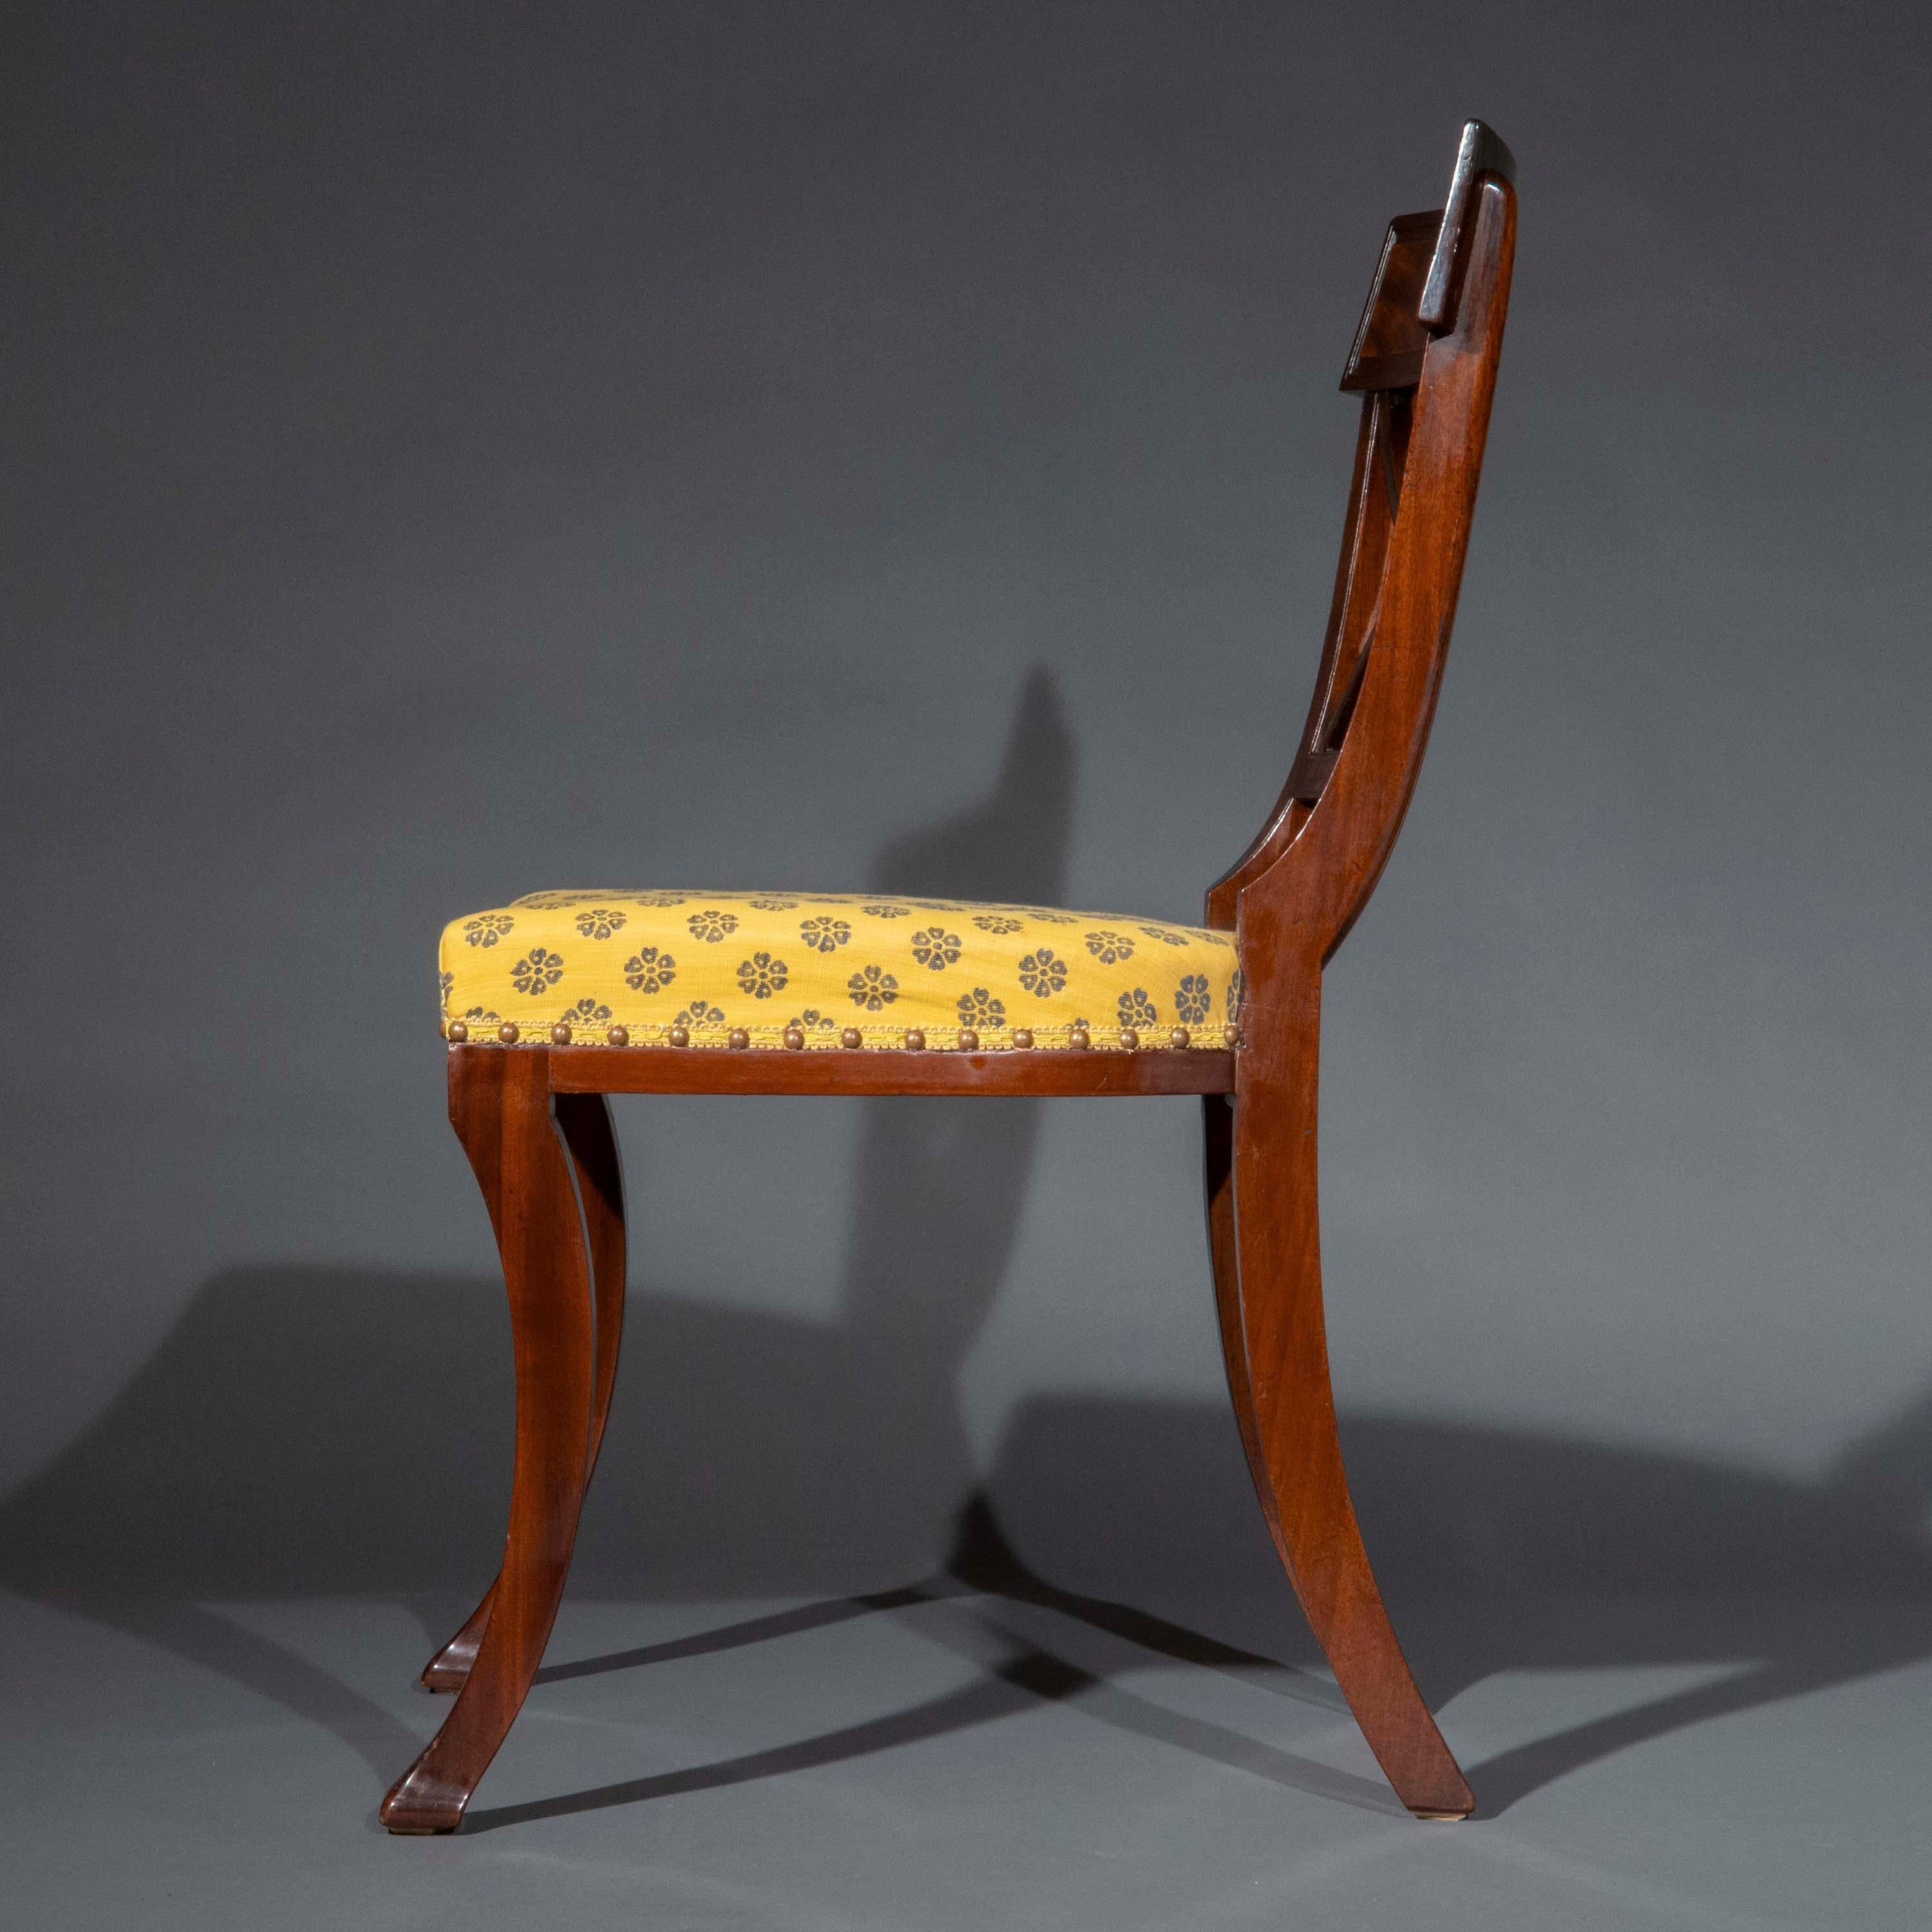 Ein sehr feines und elegantes Set von SIX 'Klismos' Beistellstühlen aus der Regency-Zeit nach Entwürfen von Thomas Hope, die Herstellung wird Gillows zugeschrieben. Ein Paar Ellbogenstühle ist separat erhältlich.
England, um 1810.

Warum wir sie